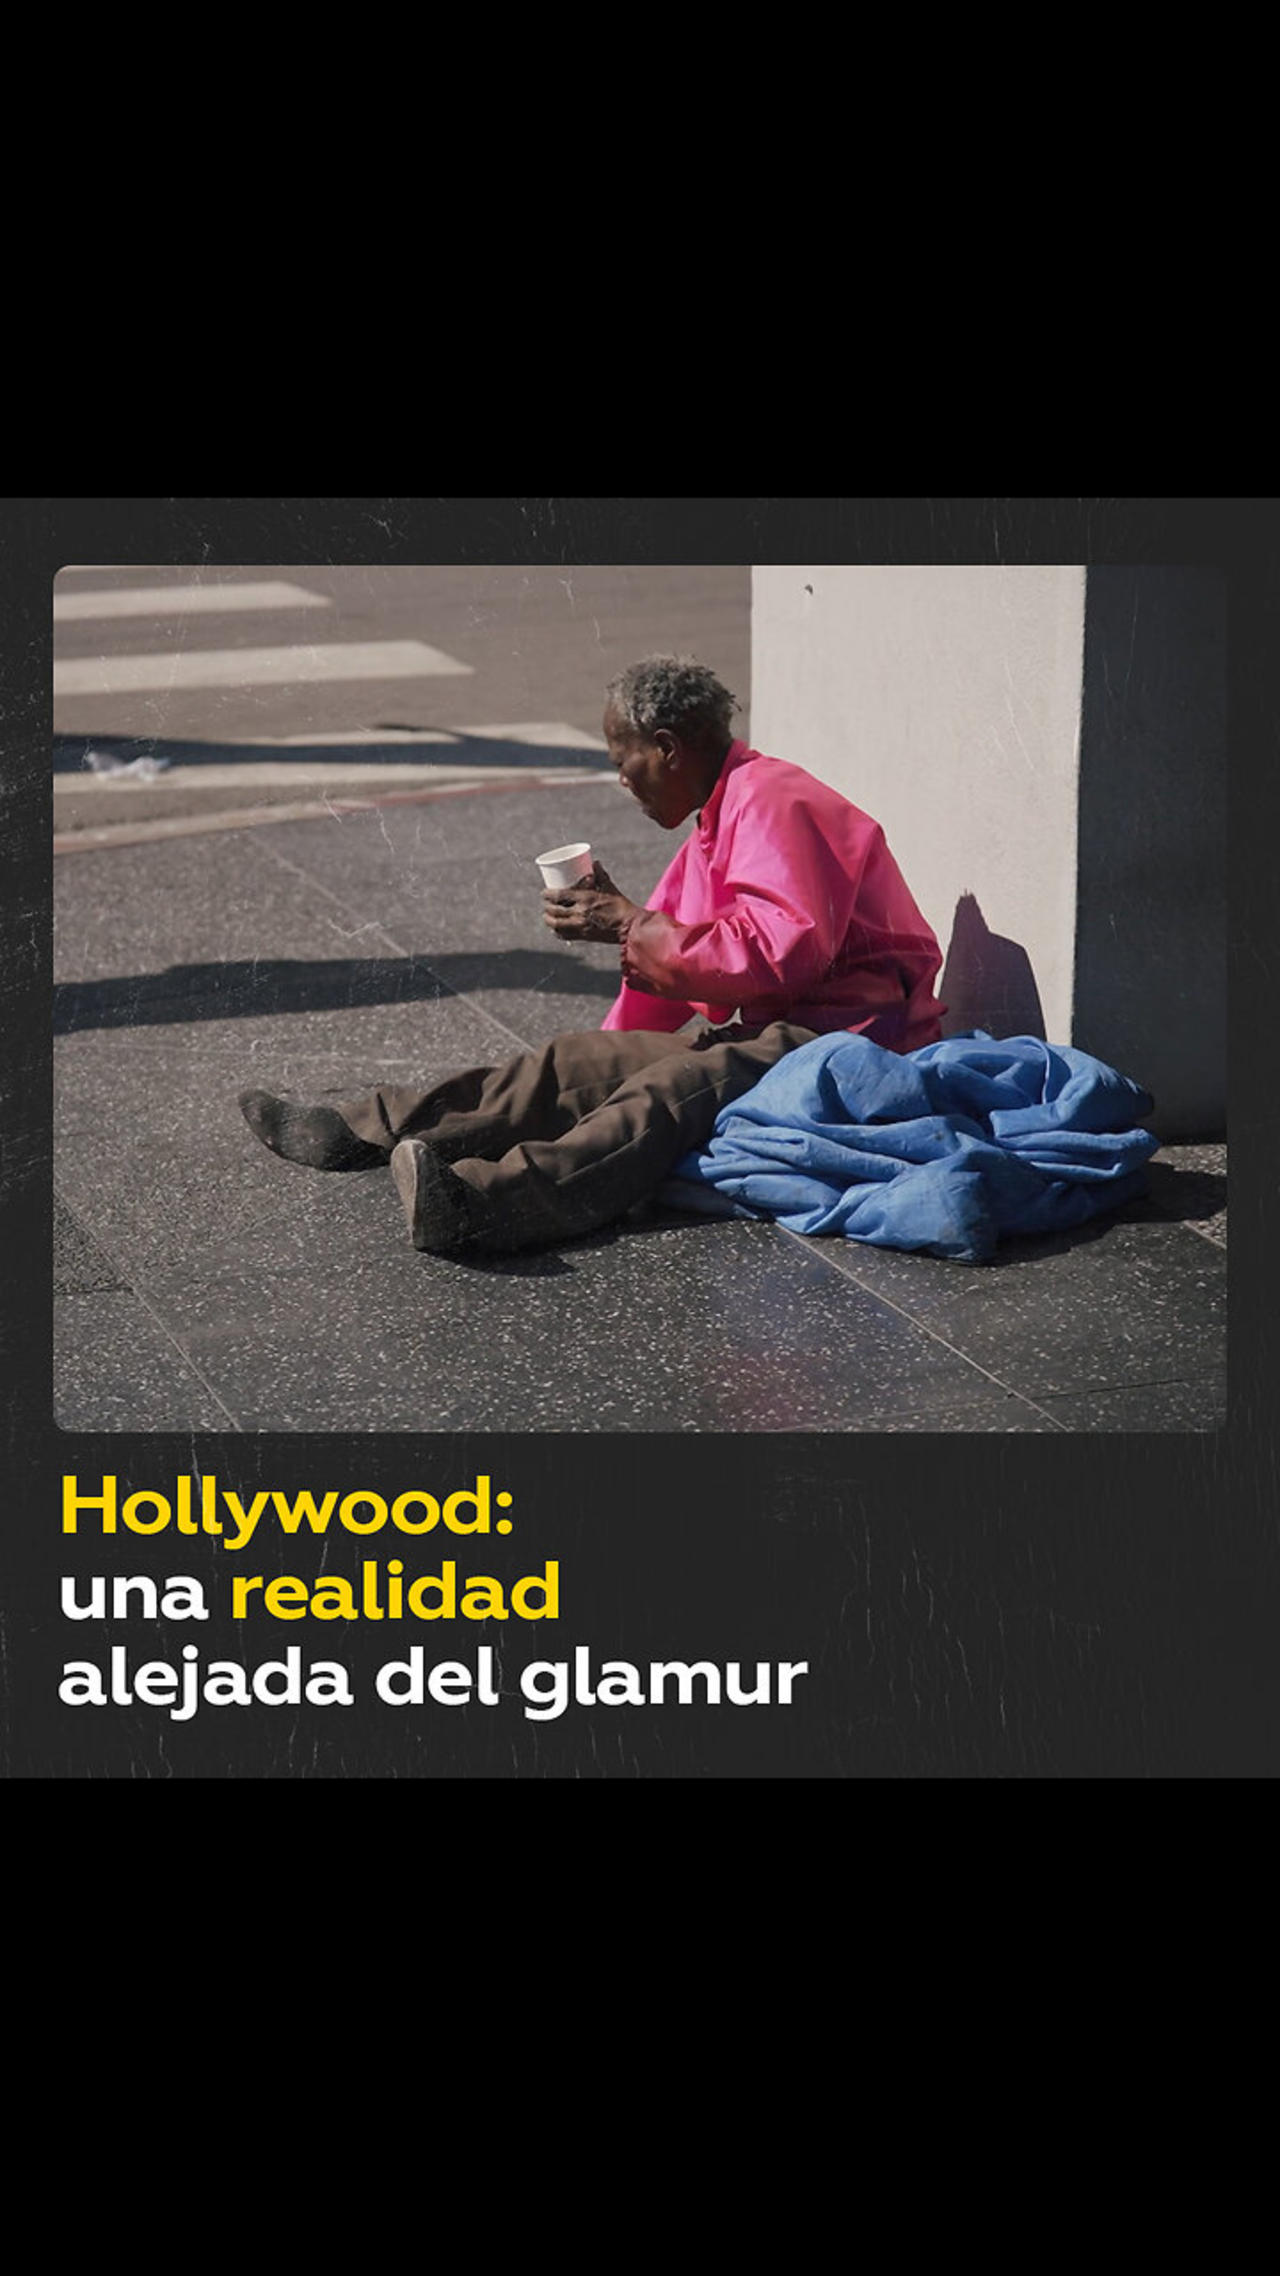 La triste realidad que esconde el glamur de Hollywood